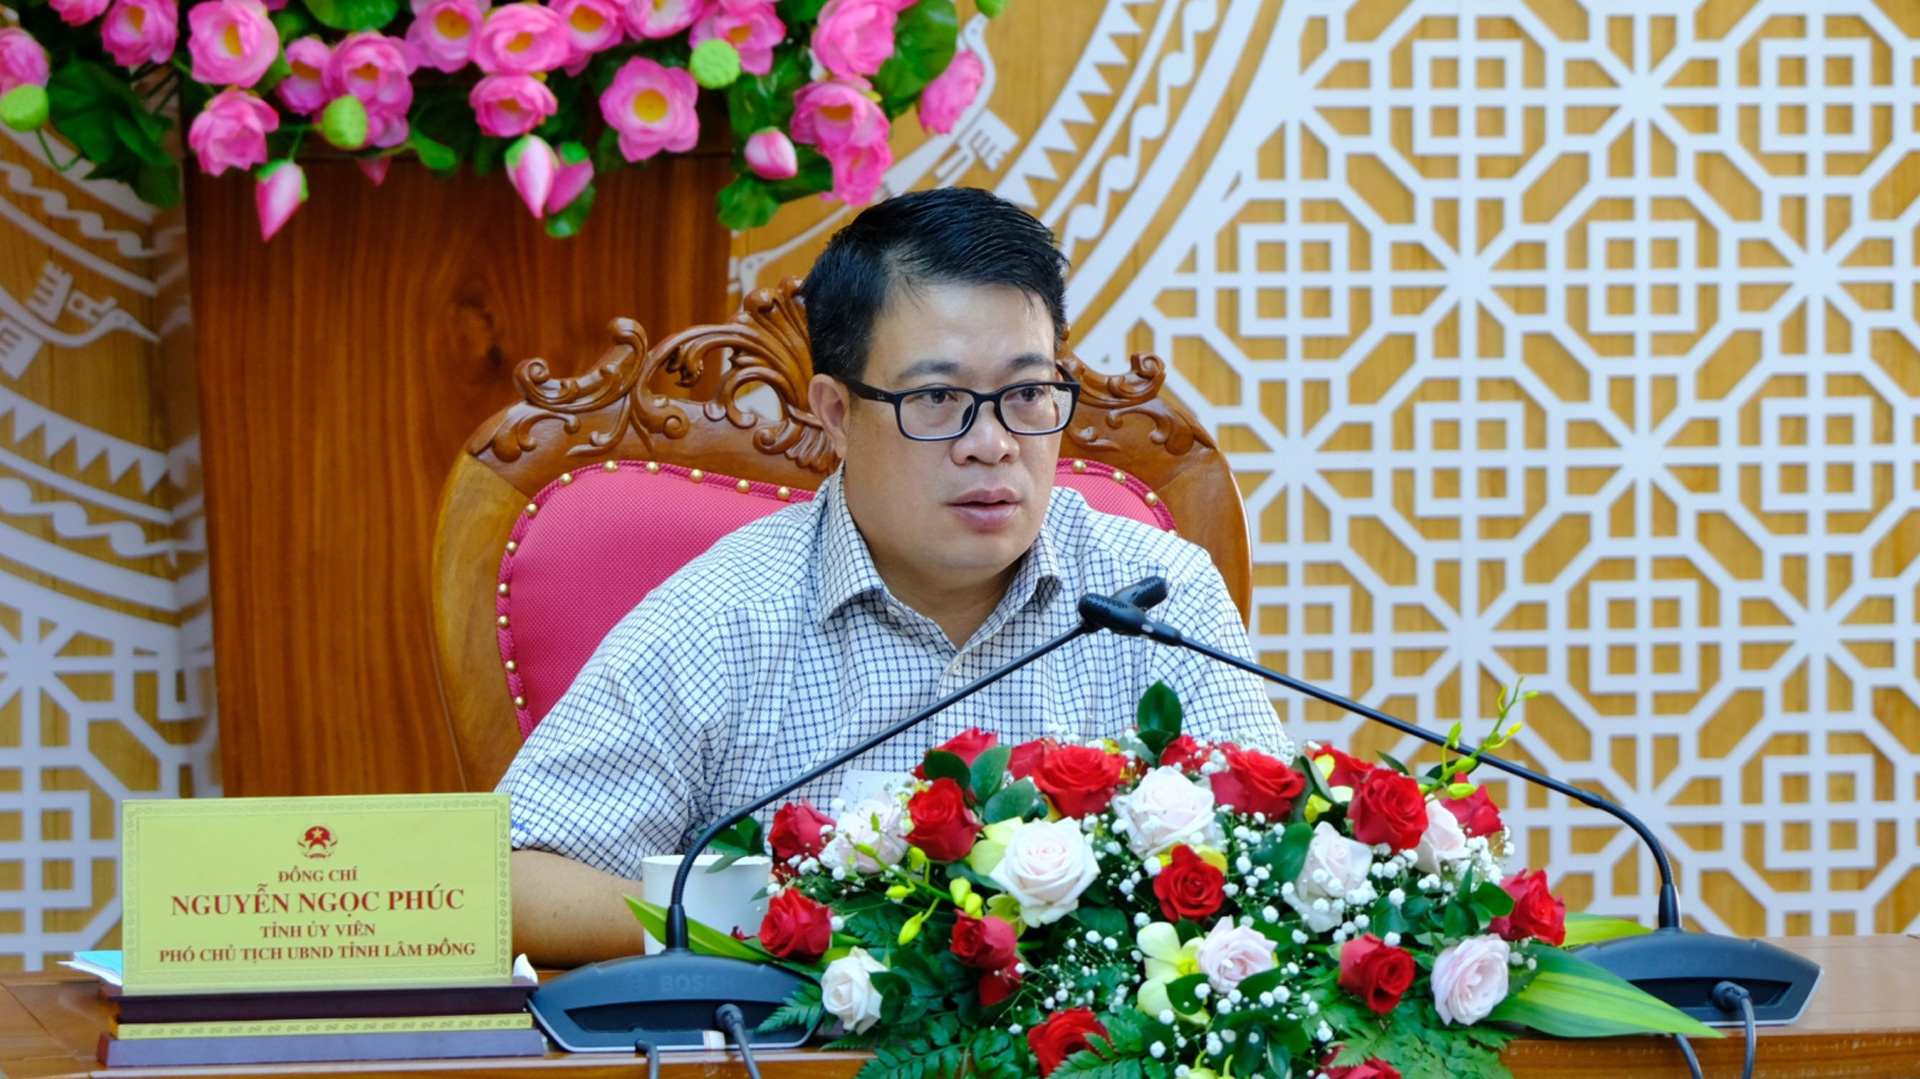 Đồng chí Nguyễn Ngọc Phúc chủ trì hội nghị tại điểm cầu tỉnh Lâm Đồng